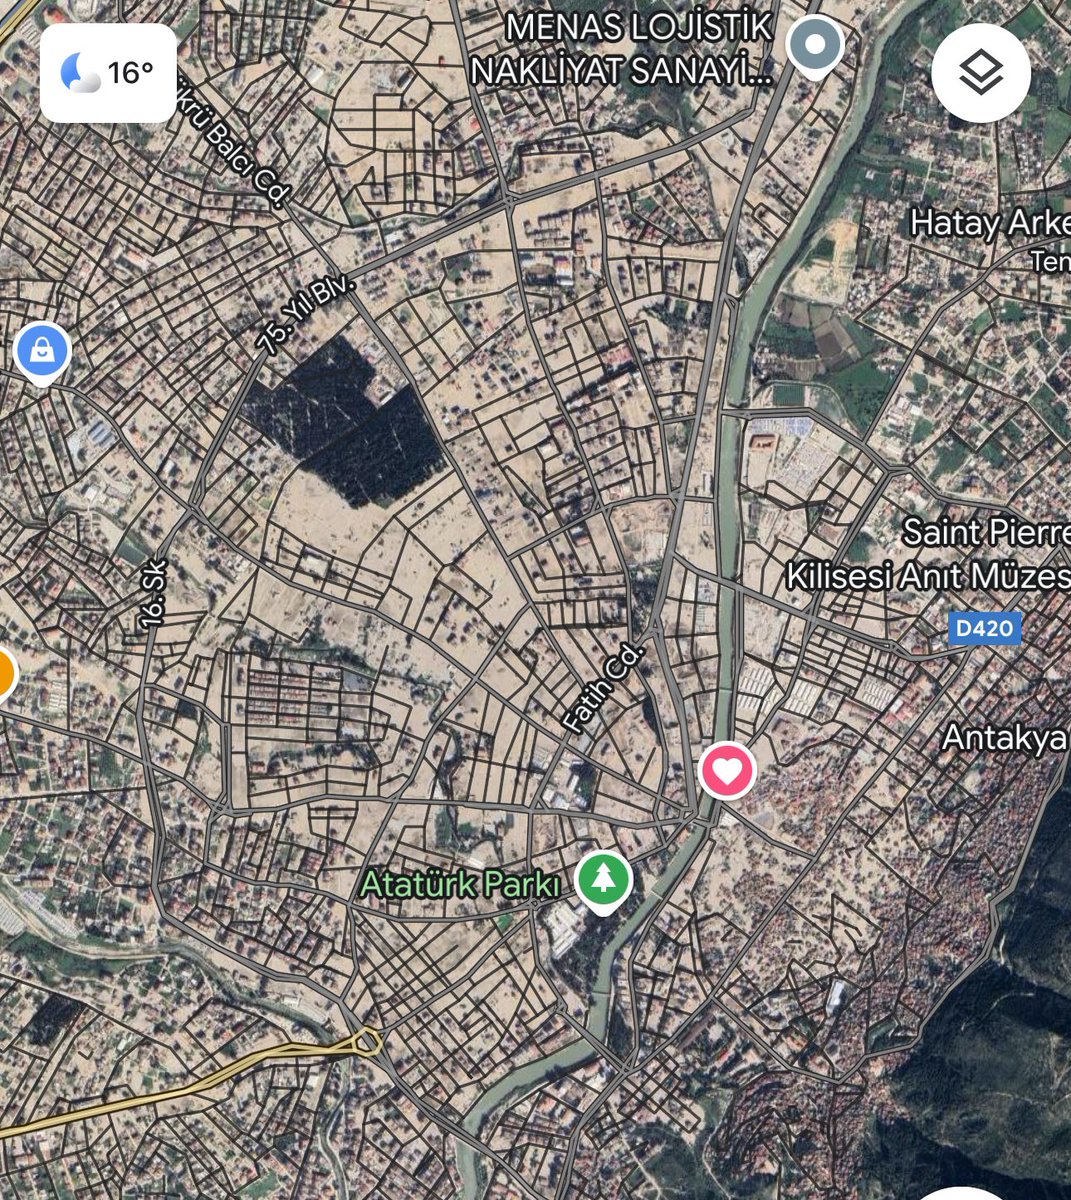 Antakya’da gezineyim dedim. Ne zaman bilmiyorum ama Google uydu görüntüsünü güncellemiş. Sadece sokak adları ve toprak gözüküyor artık. Gözleriyle görmediği için yıkımın büyüklüğünü anlamayanlar bakabilir. Bir şehir nasıl yok olur, yok edilir, işte böyle.